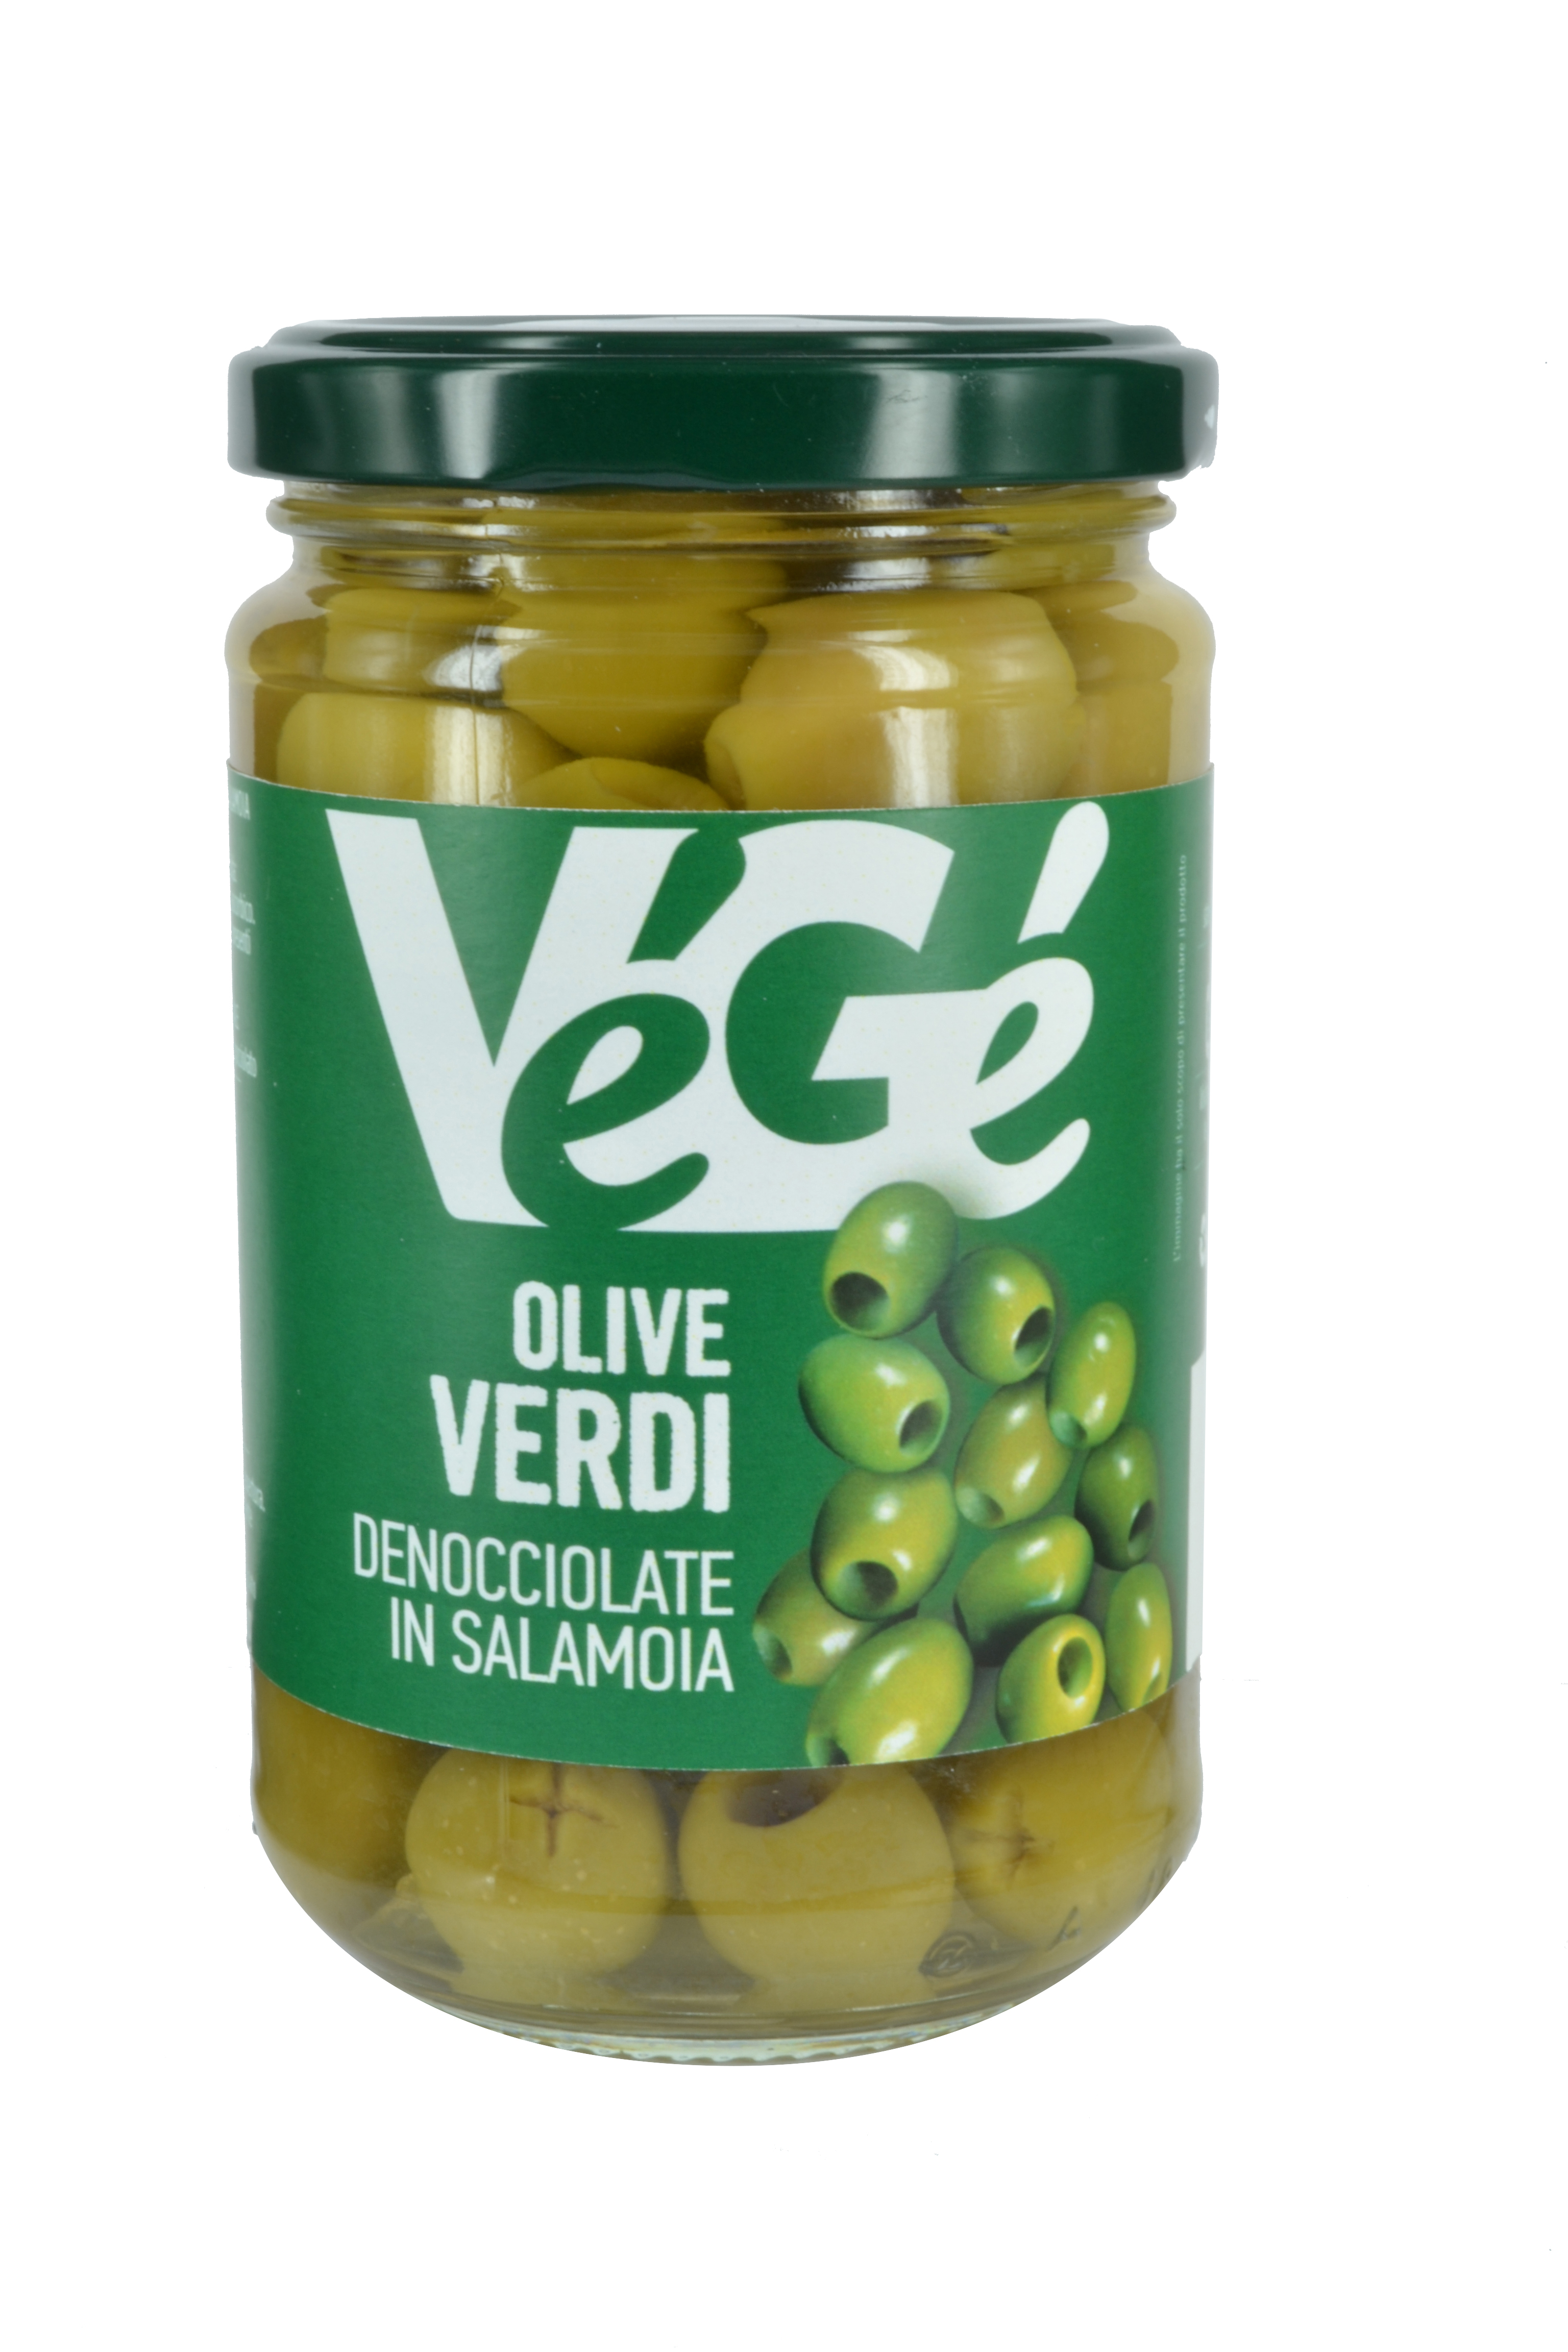 Olive verdi denocciolate in salamoia Vegé GDO (Grande Distribuzione Organizzata)